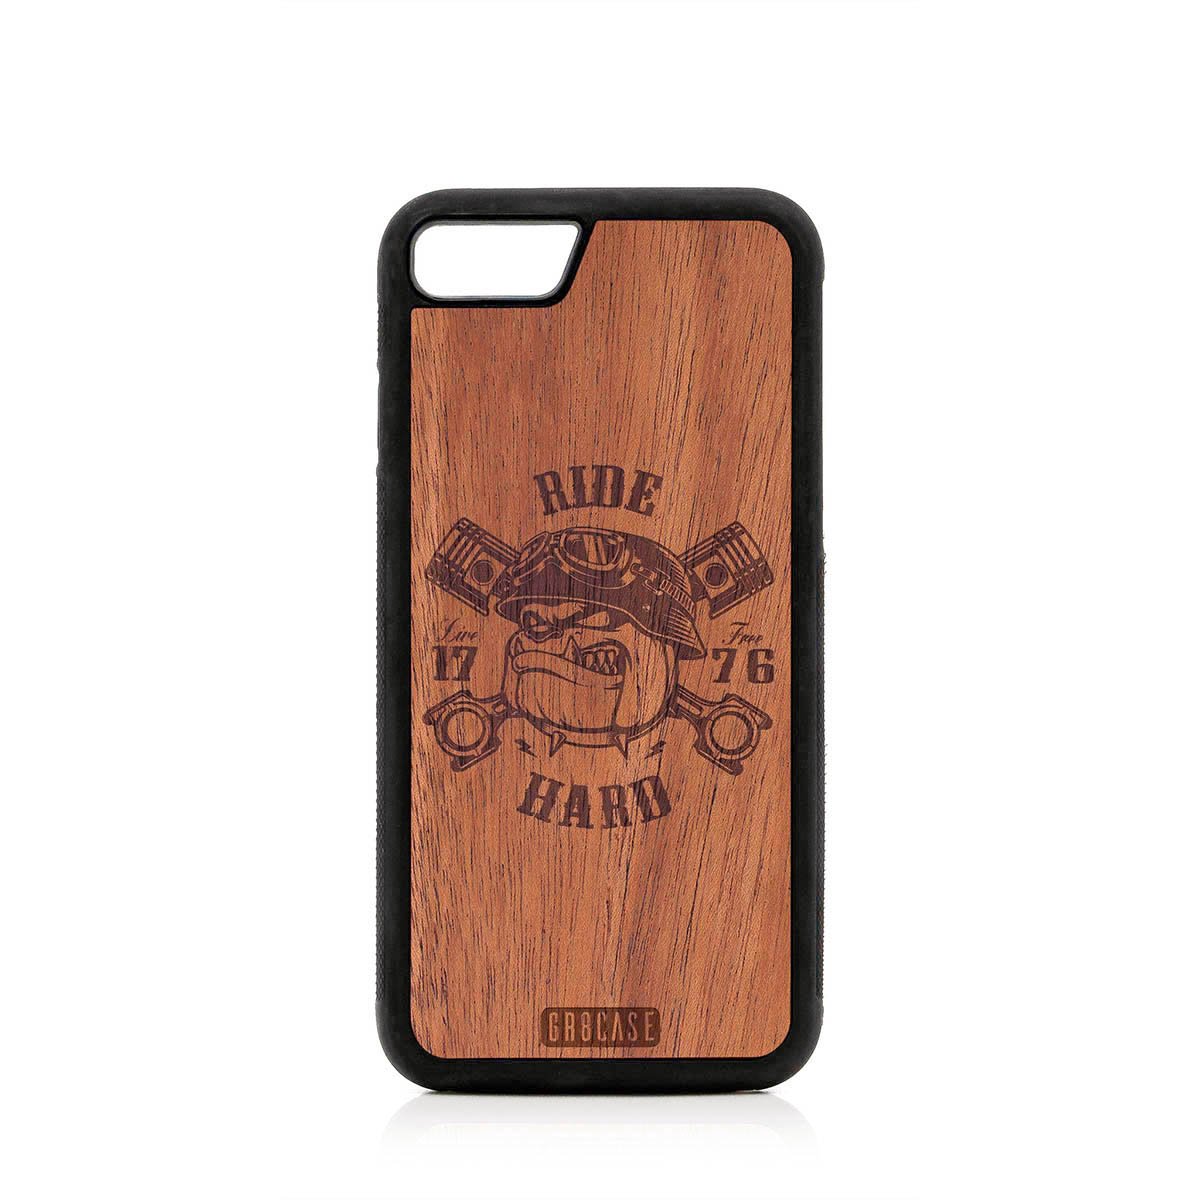 Ride Hard Live Free (Biker Dog) Design Wood Case For iPhone SE 2020 by GR8CASE